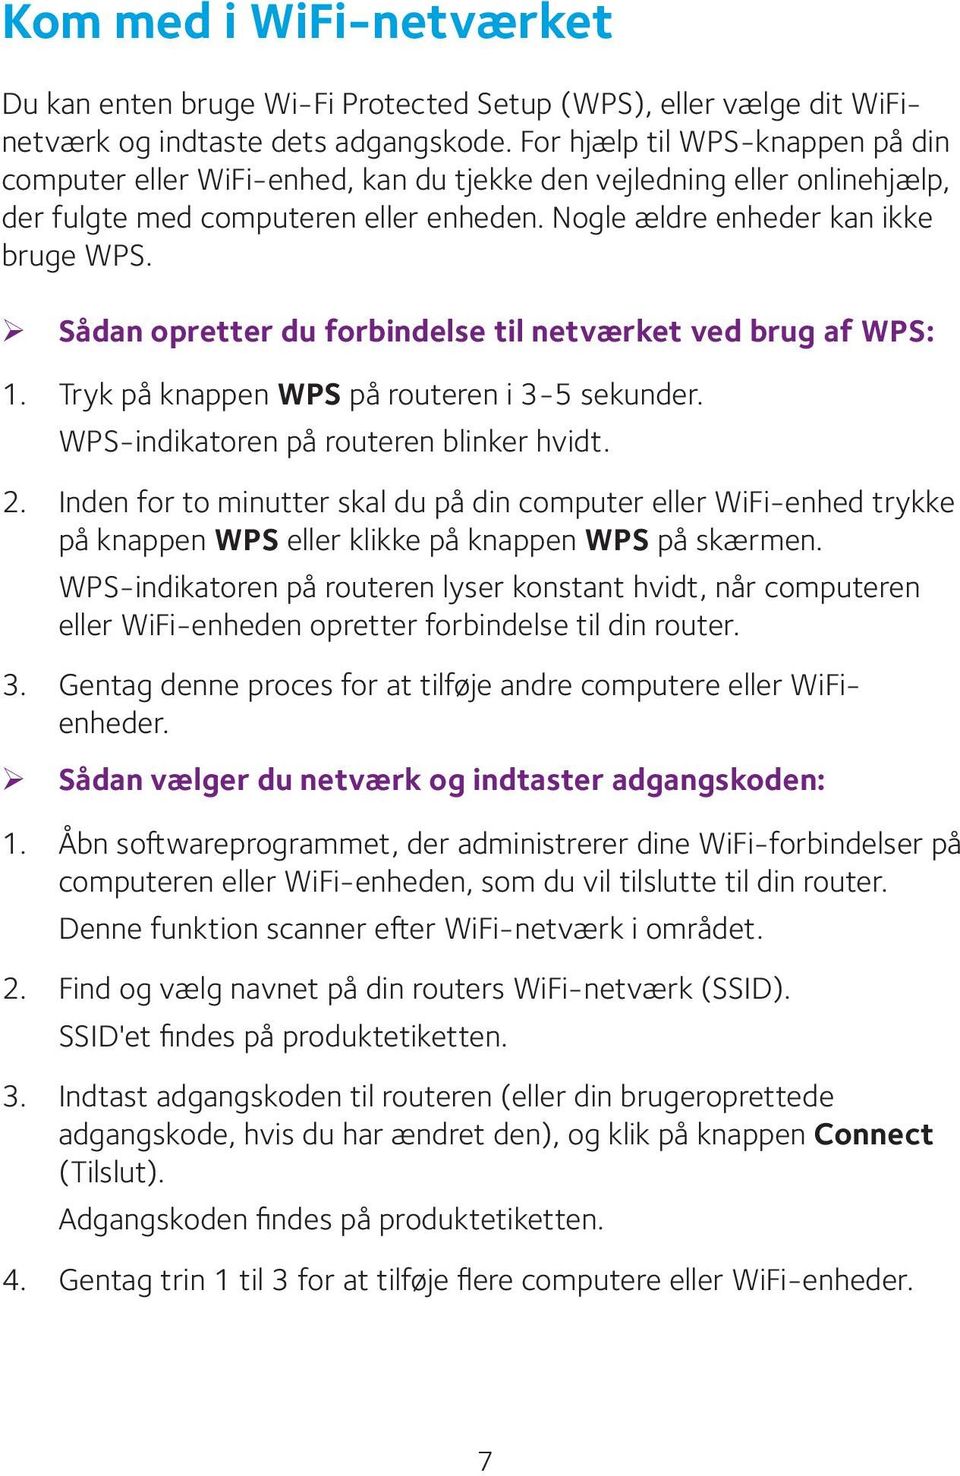 ¾ Sådan opretter du forbindelse til netværket ved brug af WPS: 1. Tryk på knappen WPS på routeren i 3-5 sekunder. WPS-indikatoren på routeren blinker hvidt. 2.